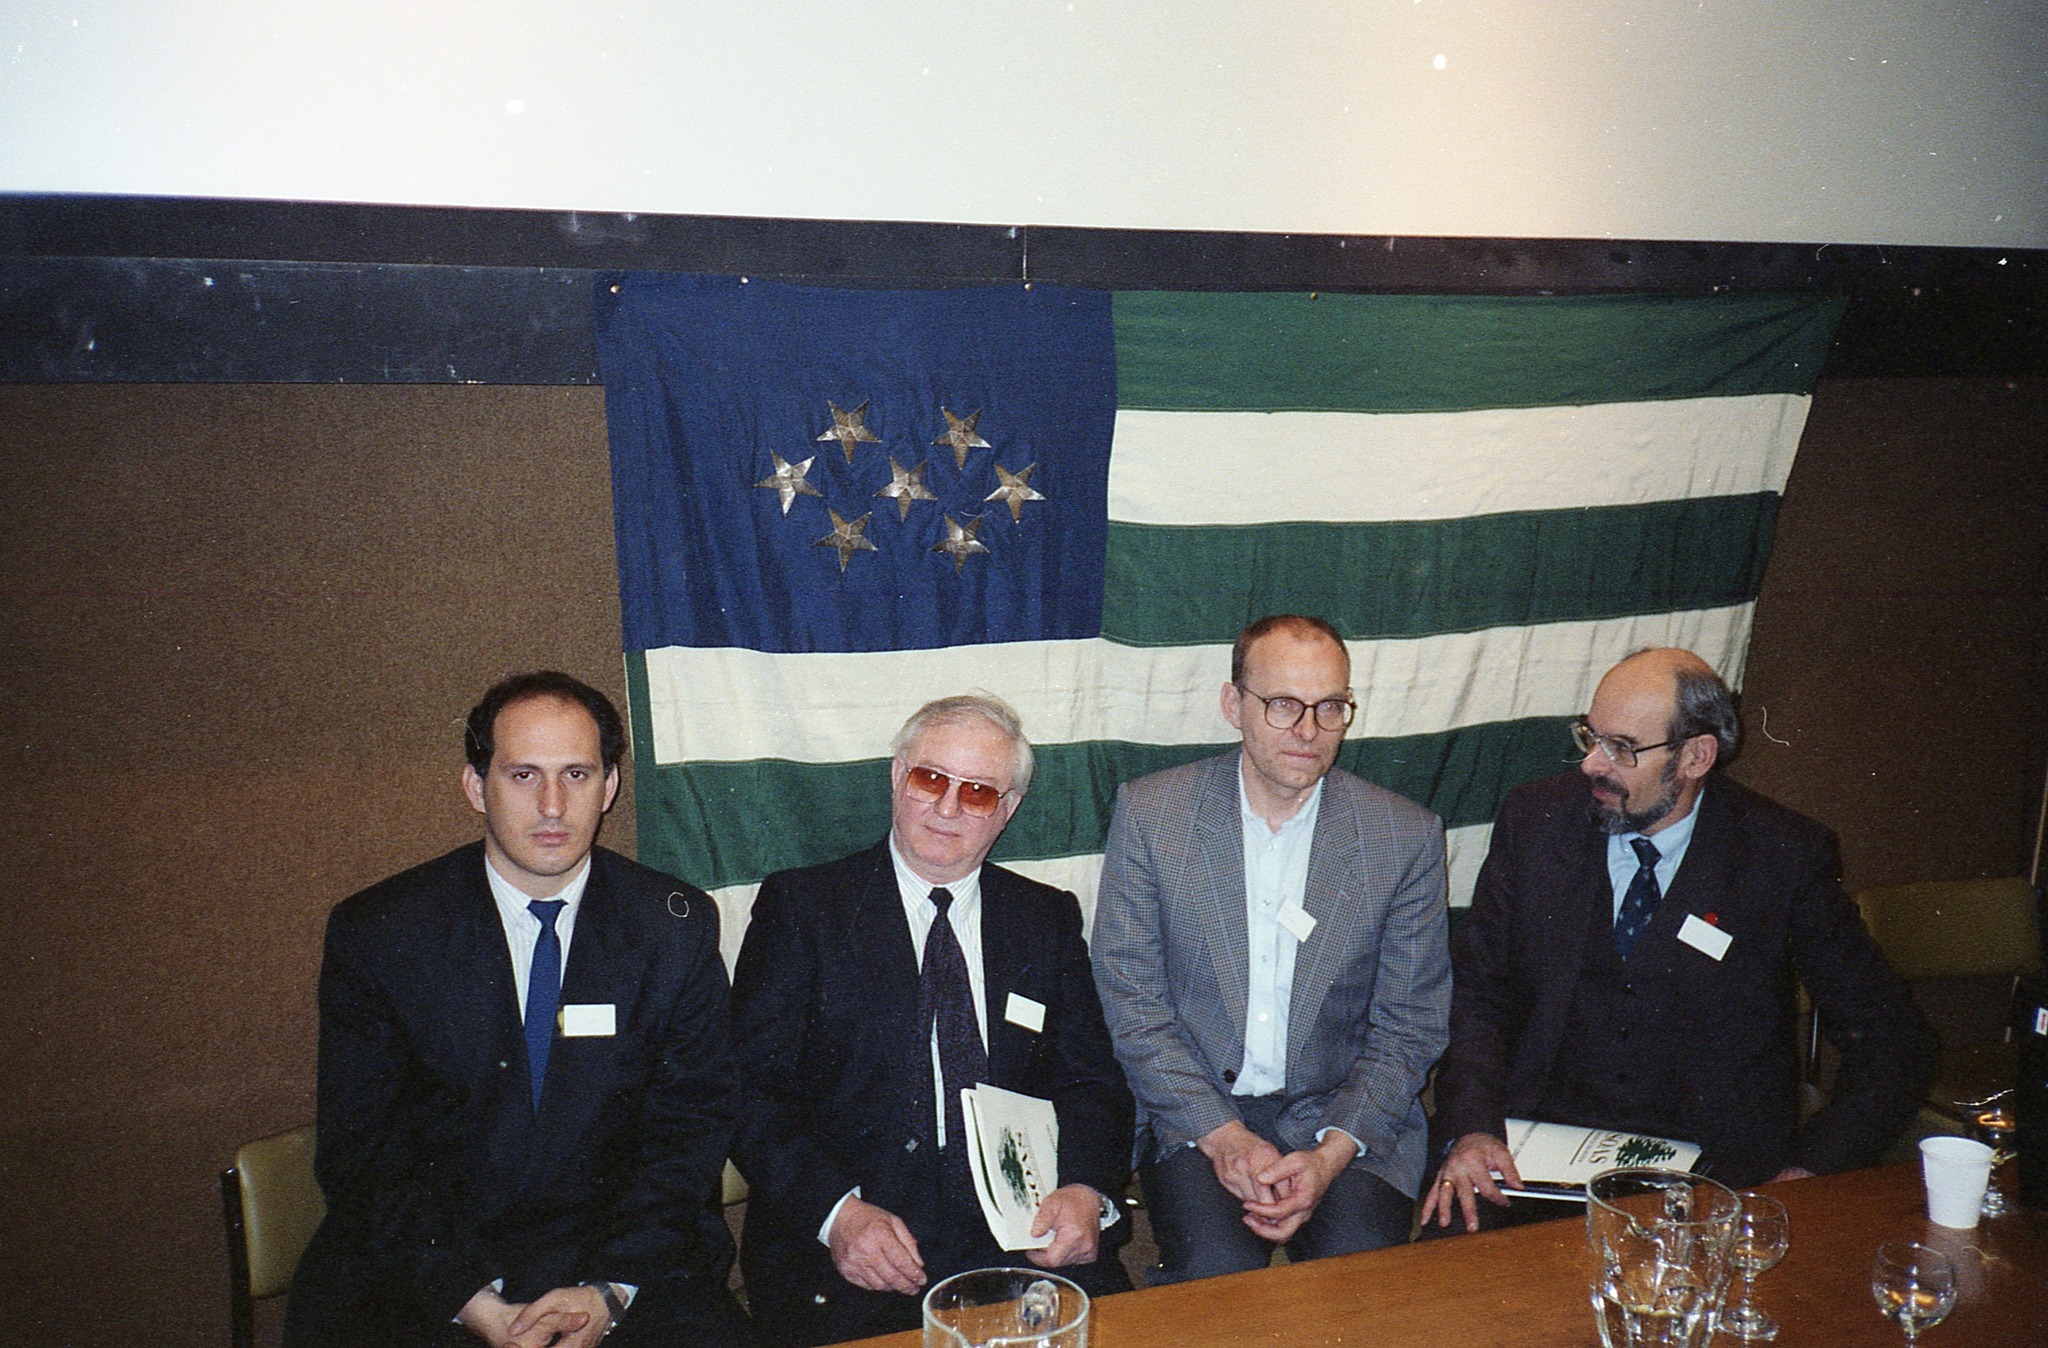 From left to right: Viacheslav Chirikba, Yahya Kazanba, Rieks Smeets, Yuri Voronov; University of London, 1993.